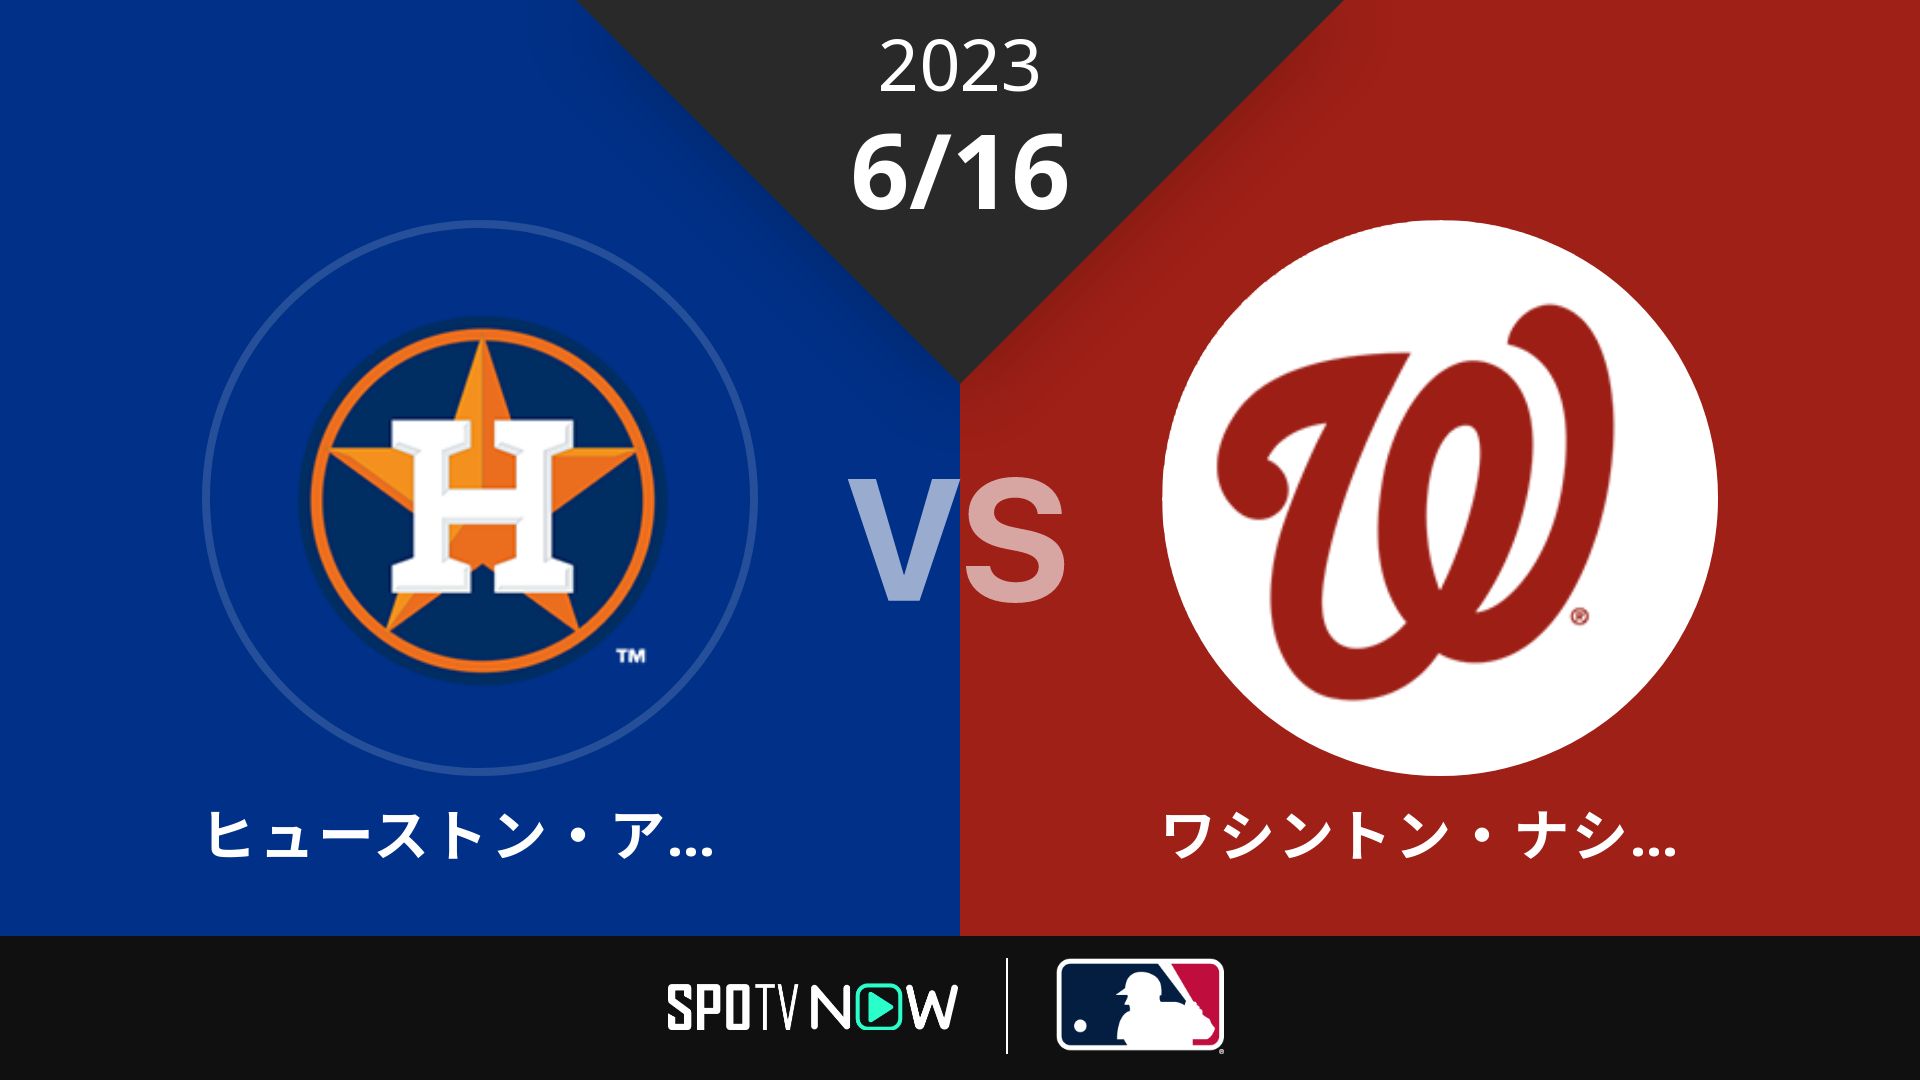 2023/6/16 アストロズ vs ナショナルズ [MLB]